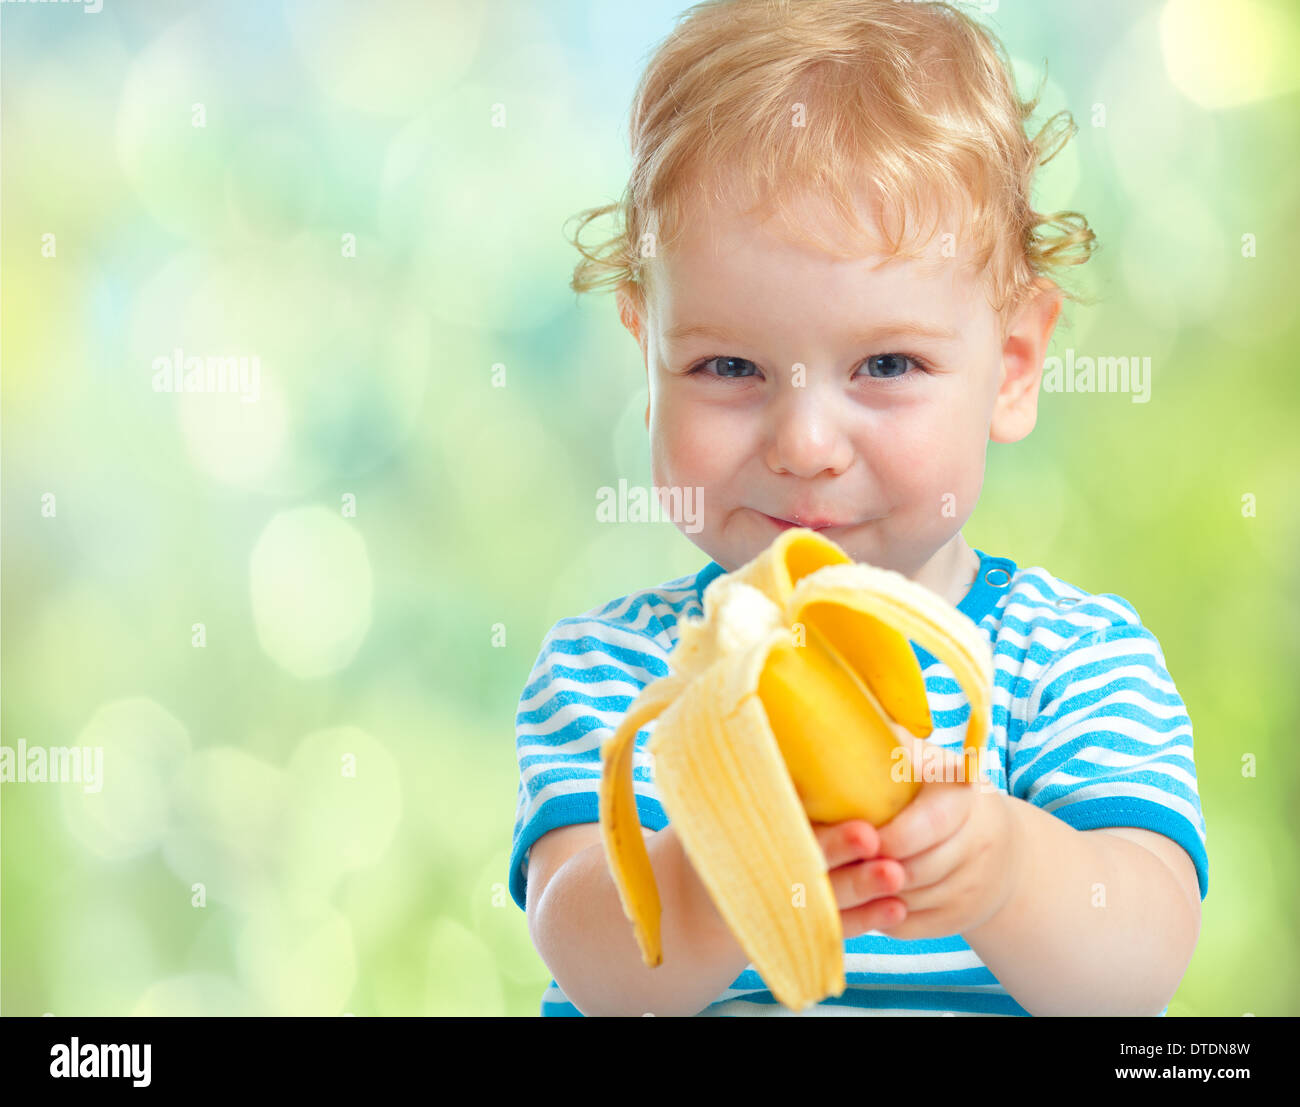 Capretto felice di mangiare frutta banana. cibo sano concetto di mangiare. Foto Stock